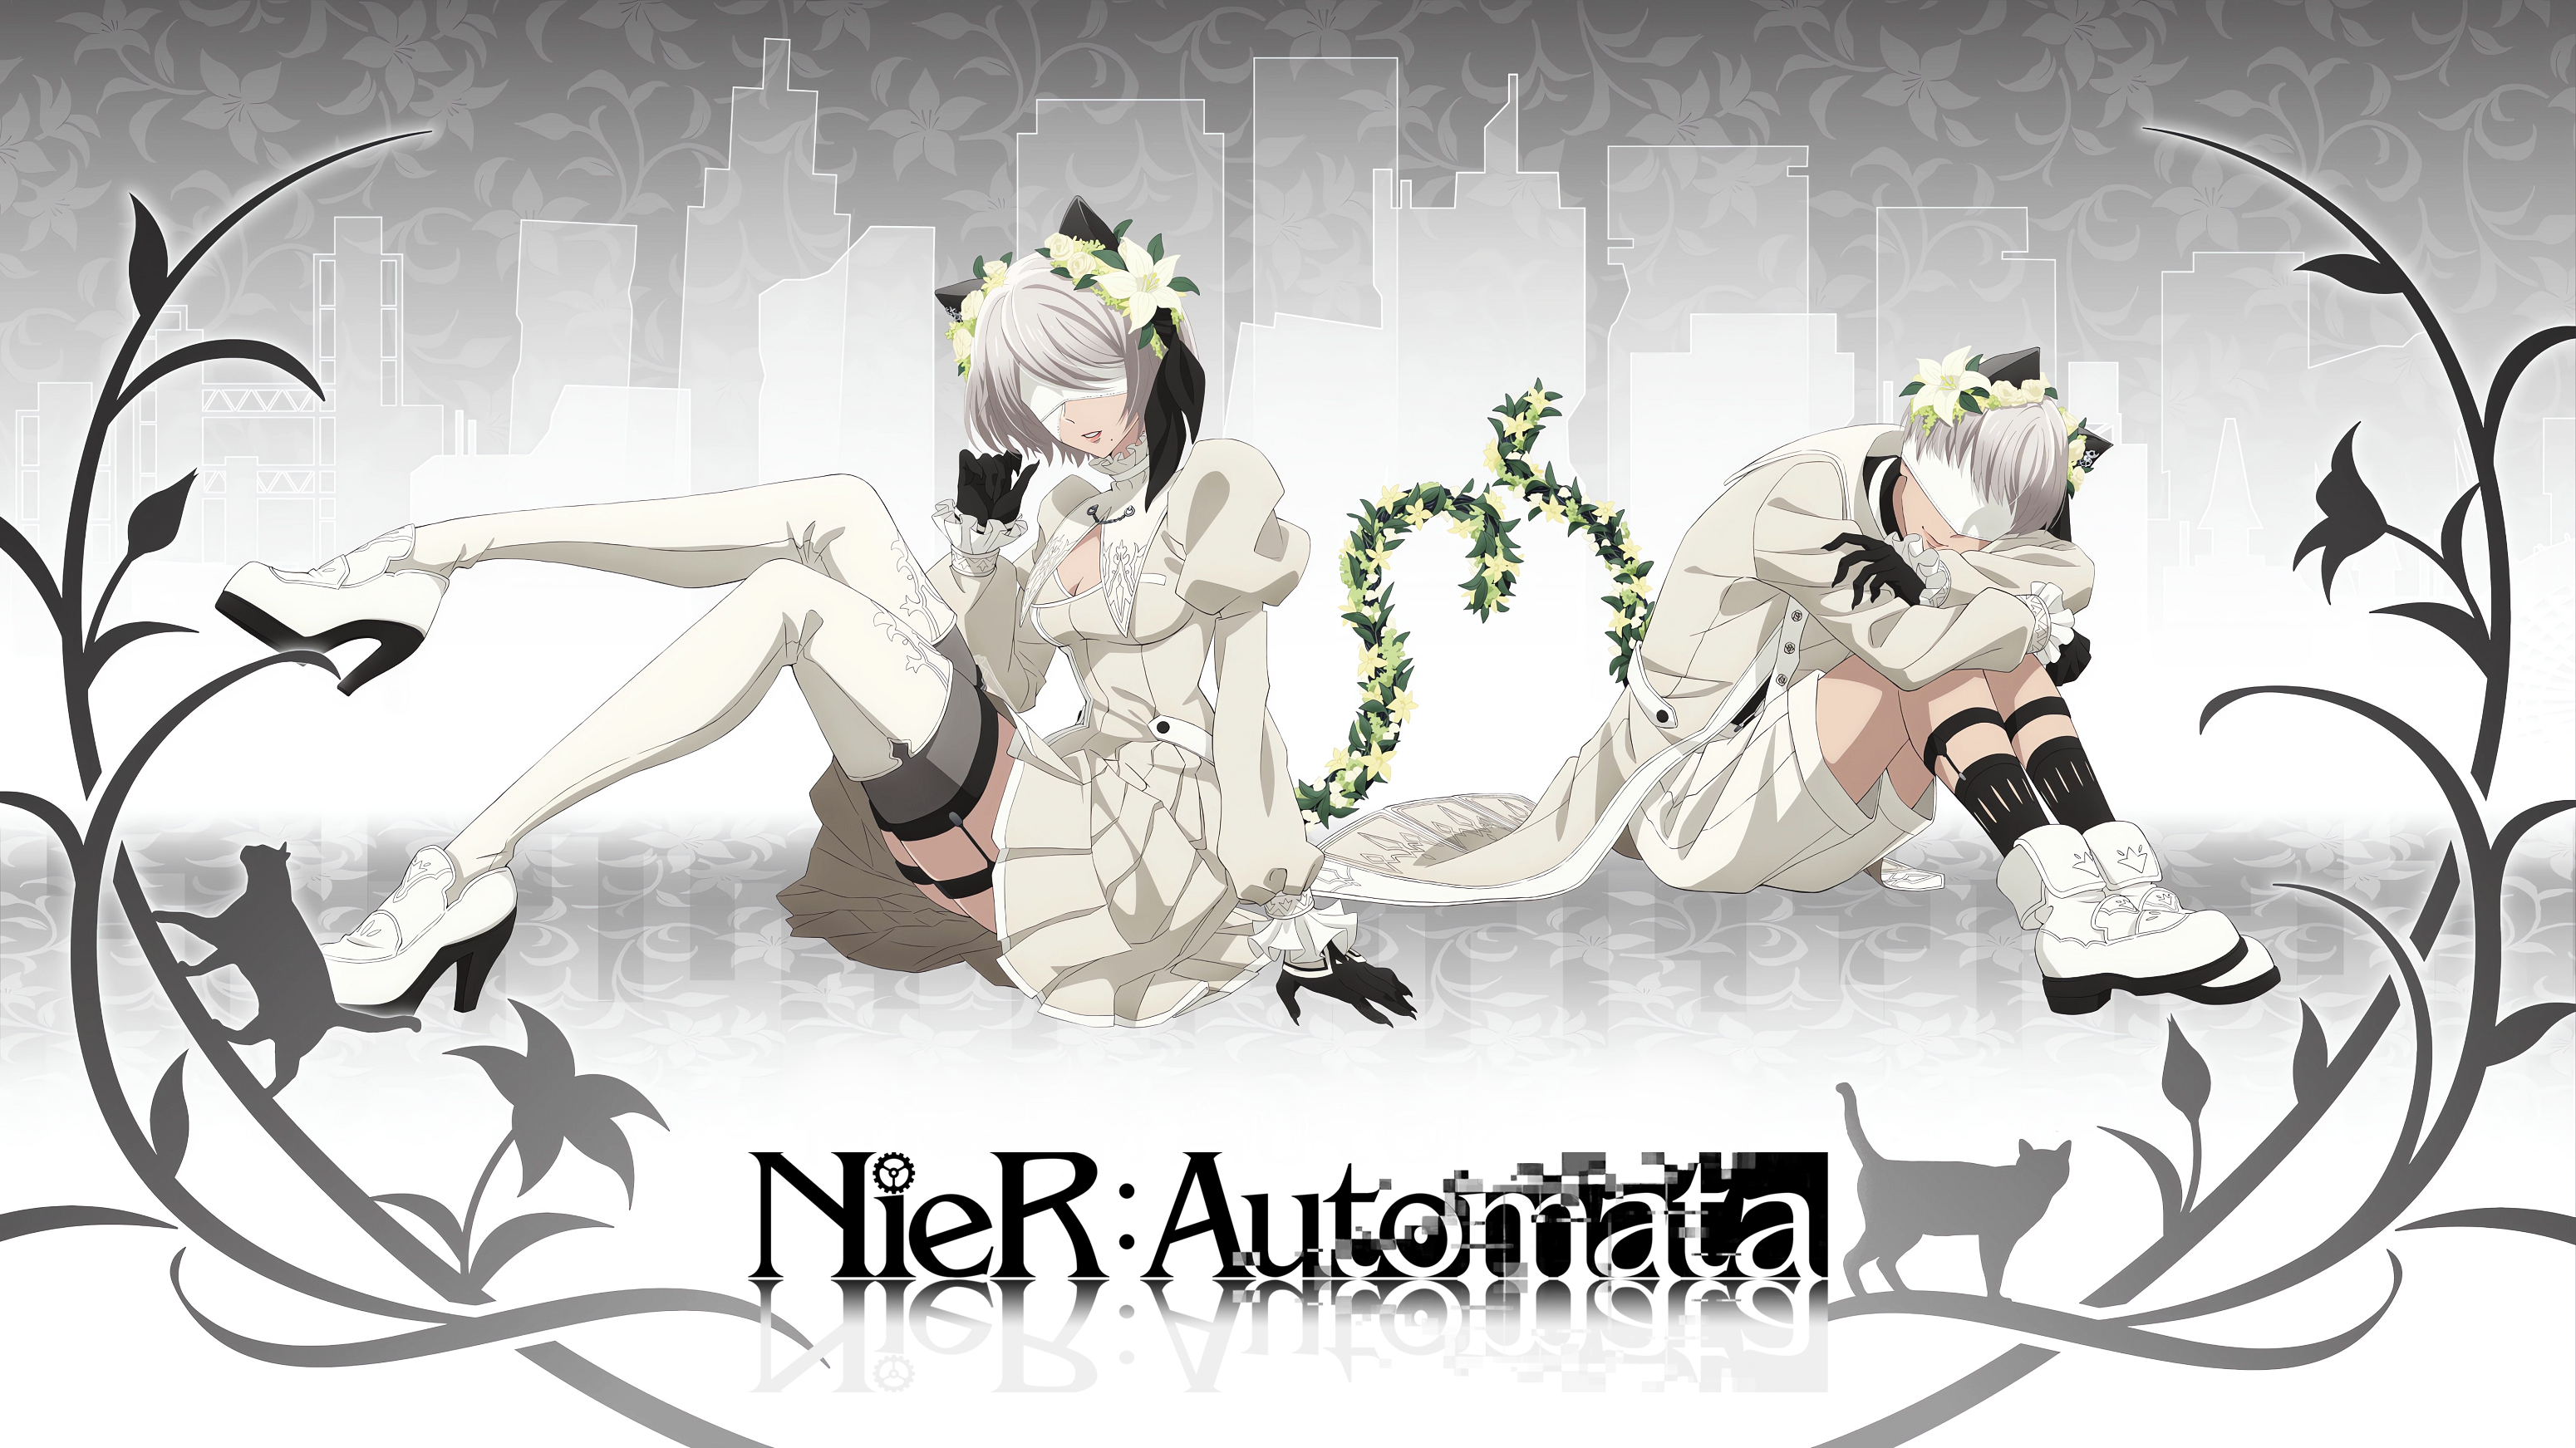 Anime 3100x1743 Nier: Automata 2B (Nier: Automata) 9S (Nier: Automata) anime boys anime girls silver hair flowers smiling white dress